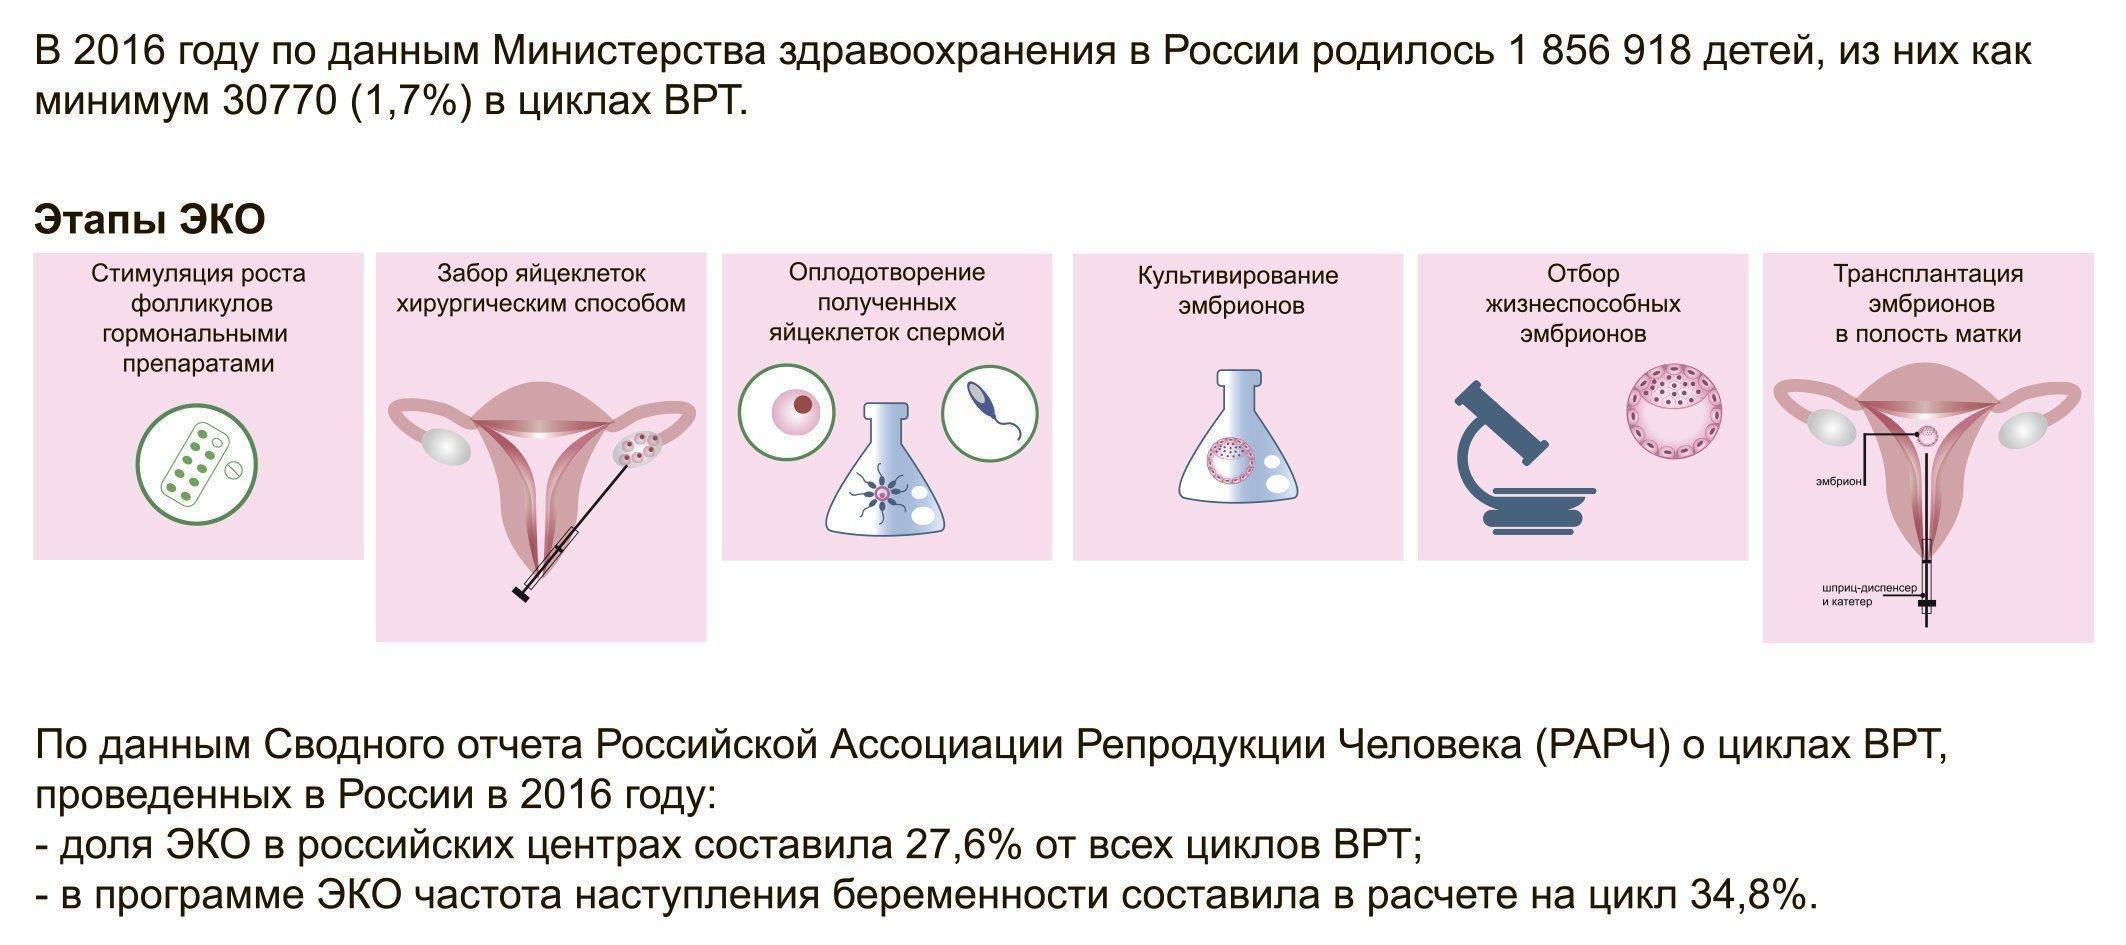 Перенос эмбрионов в полость матки (iv этап программы эко)